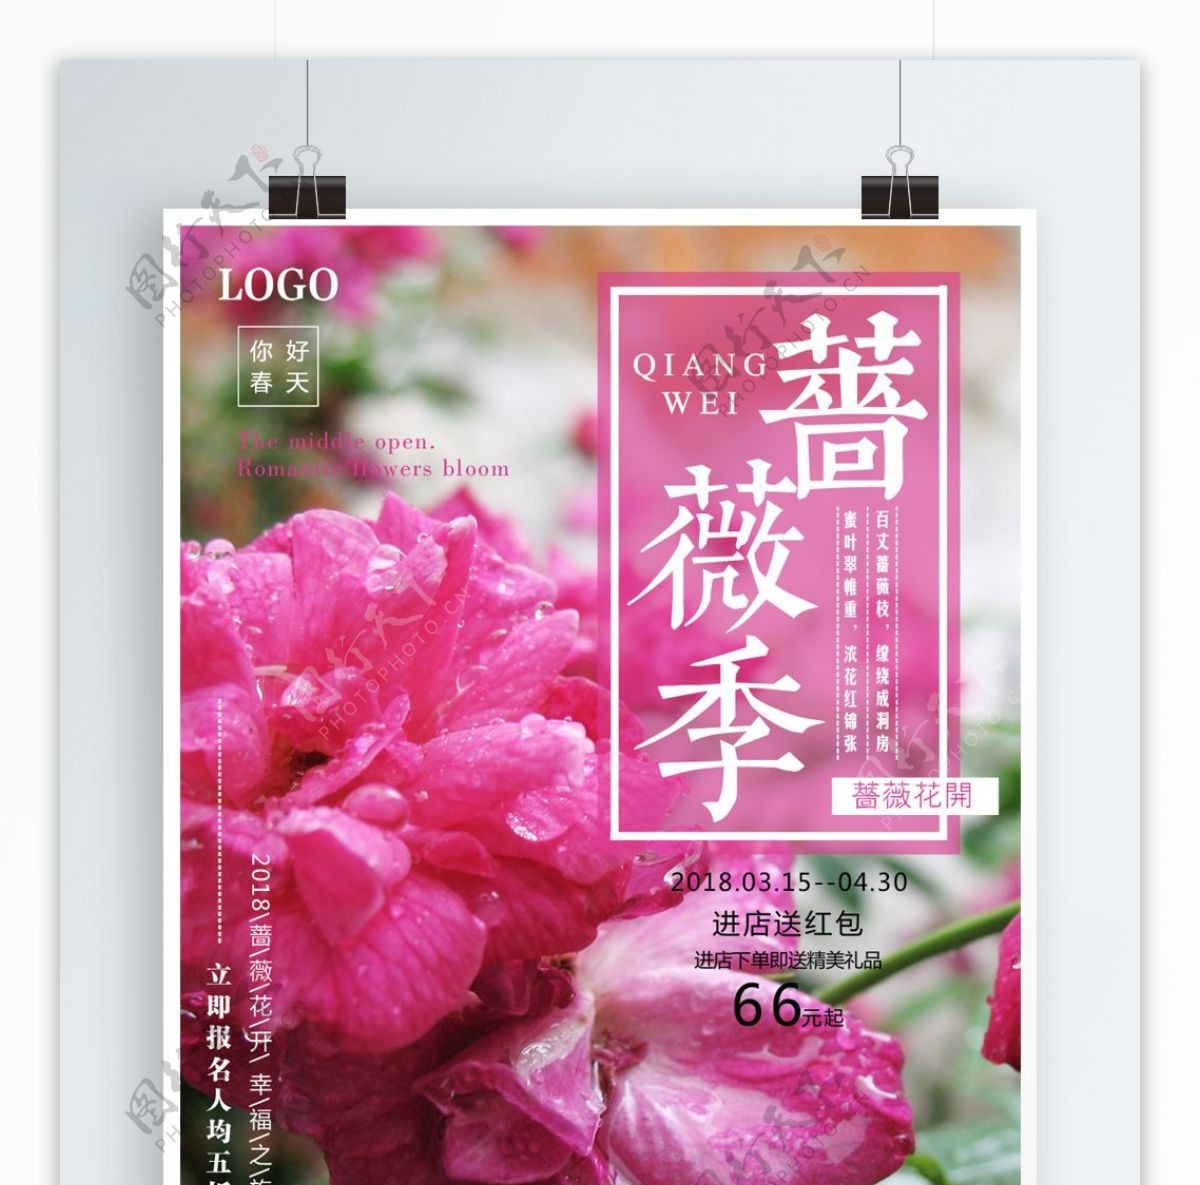 简约蔷薇季旅游促销海报